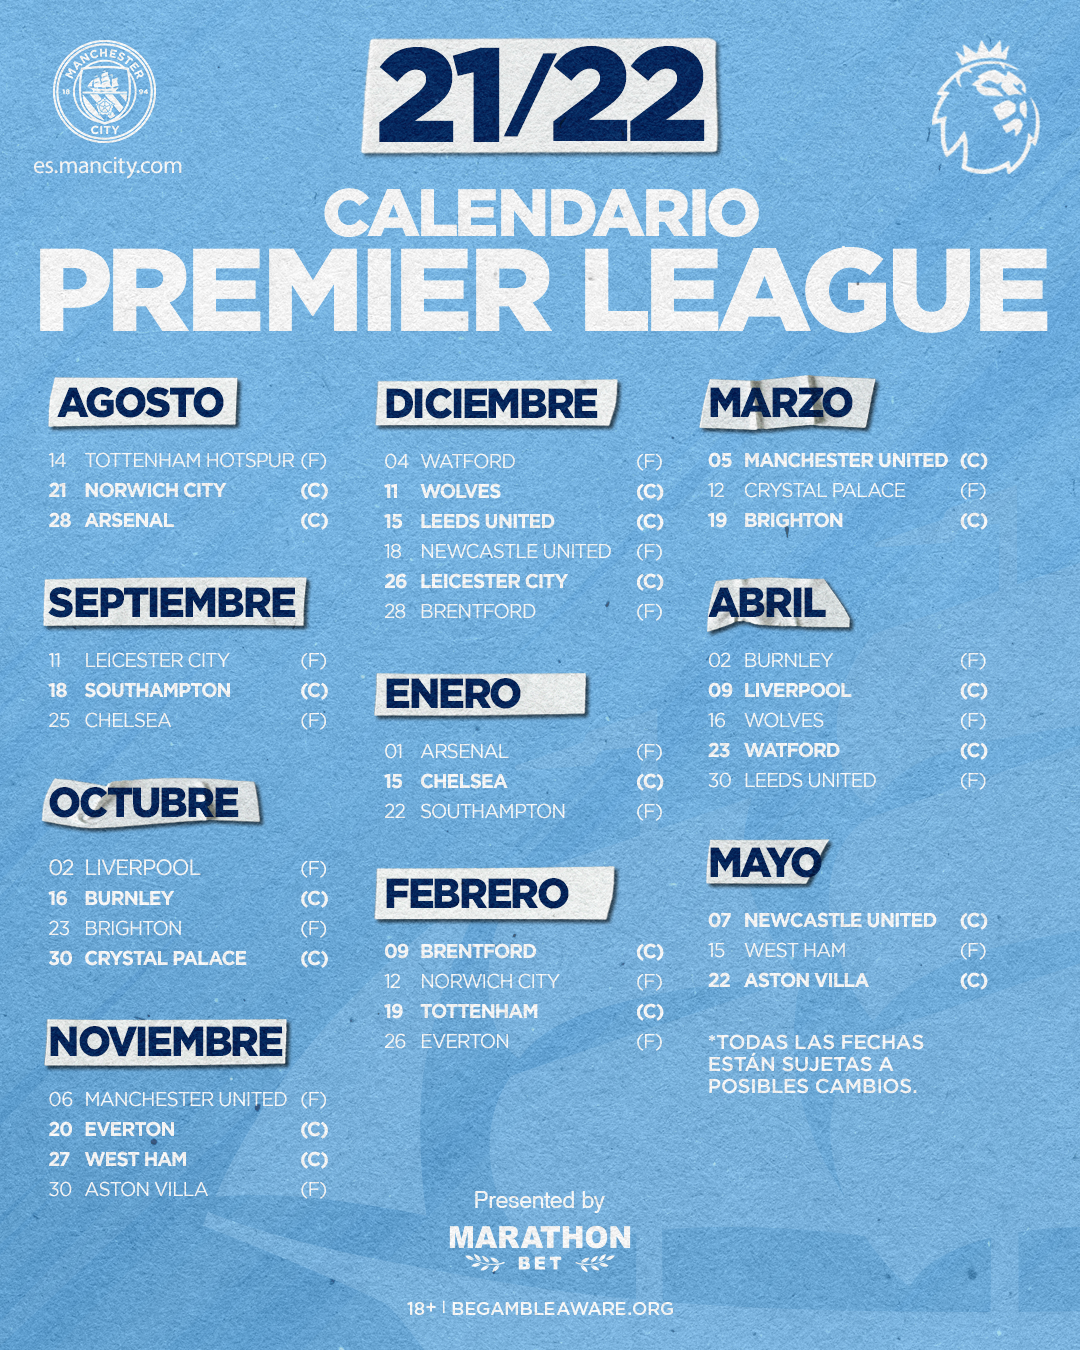 
                        PREMIER LEAGUE 2021/22. : El calendario completo del Manchester City.
                